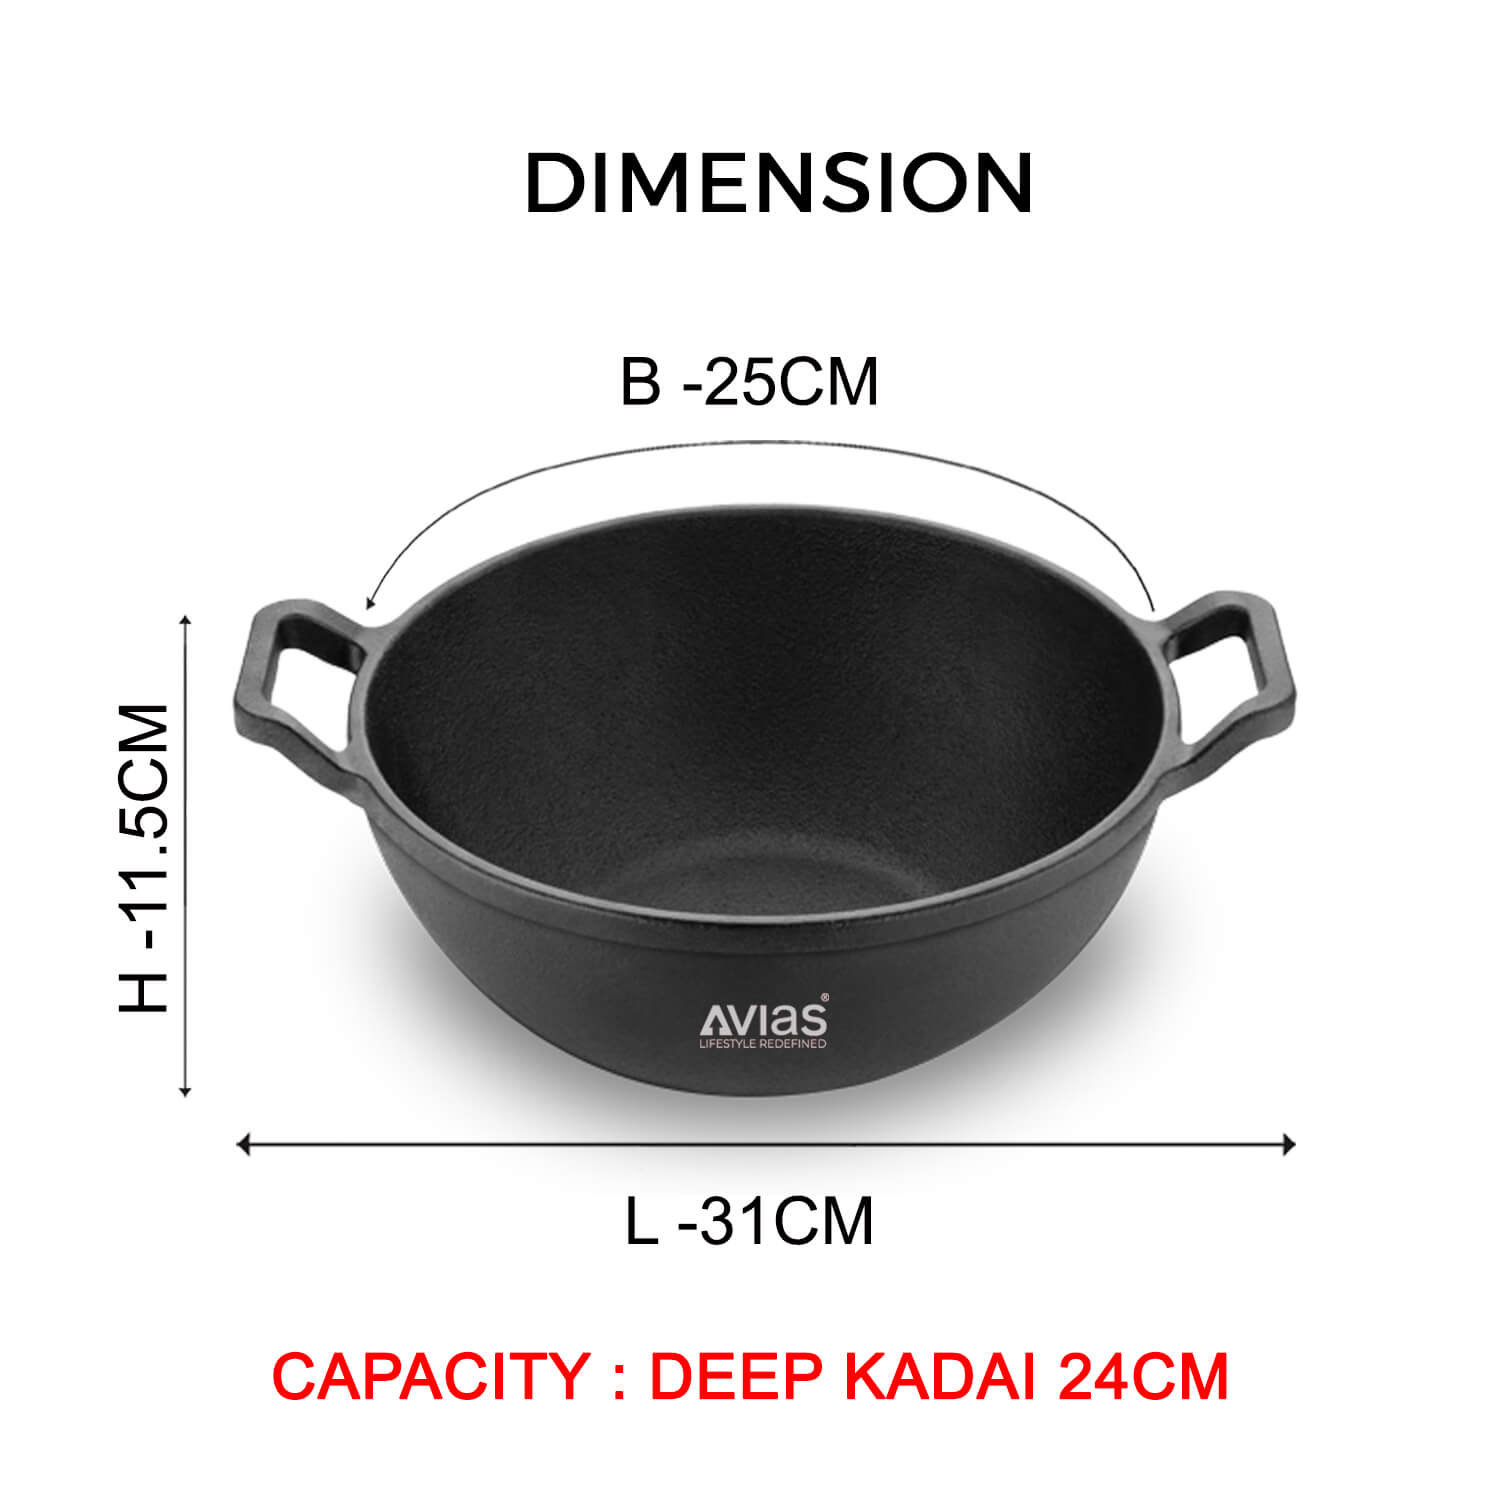 Cast Iron Dosa Tawa Pan/ Dosa Kallu/ Chapati Tawa/ Roti Iron Tawa dimension Pre-Seasoned Cookware 